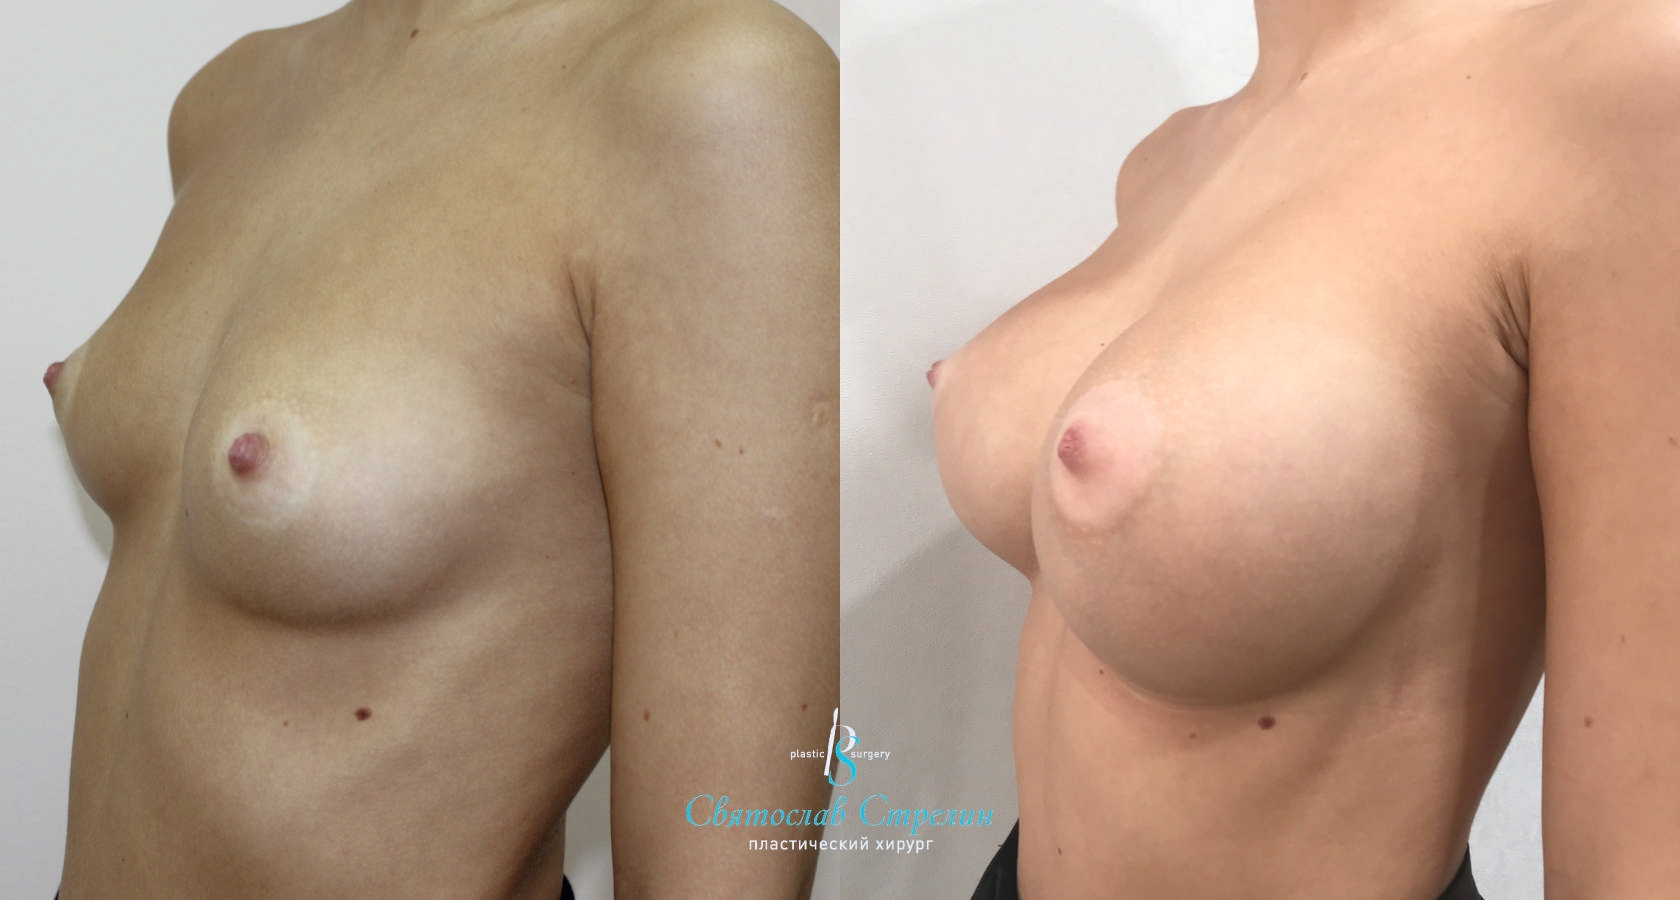 Увеличение груди, 1 год после операции, импланты Себбин 415 мл, анатомические, средняяв ысота, высокая проекция, доступ подмышечный